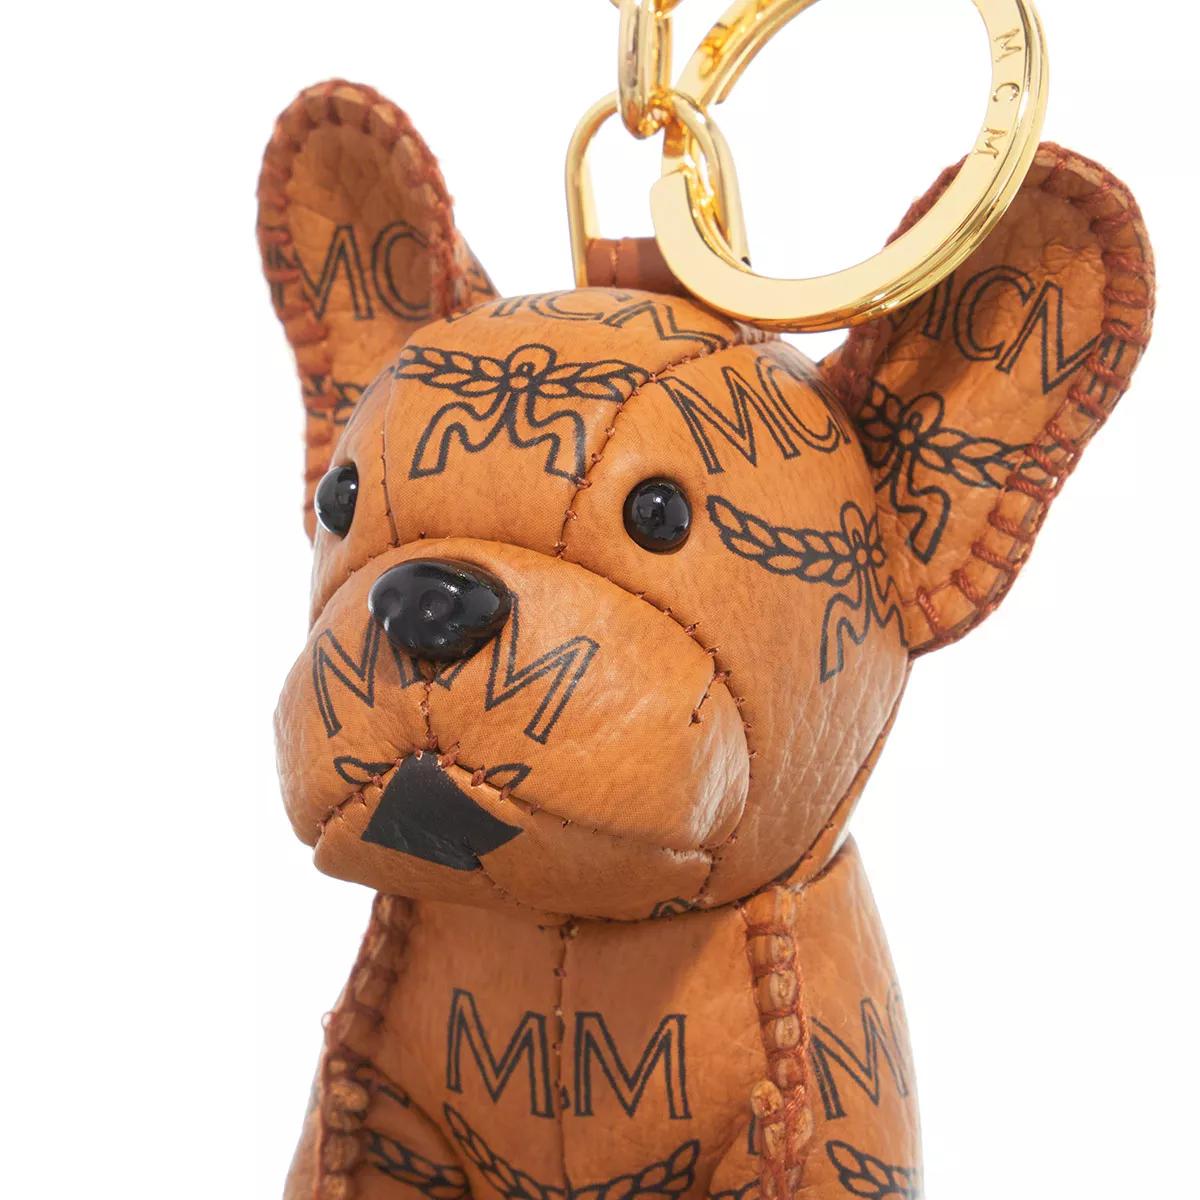 MCM 'M Pup' keyring charm, Men's Accessorie